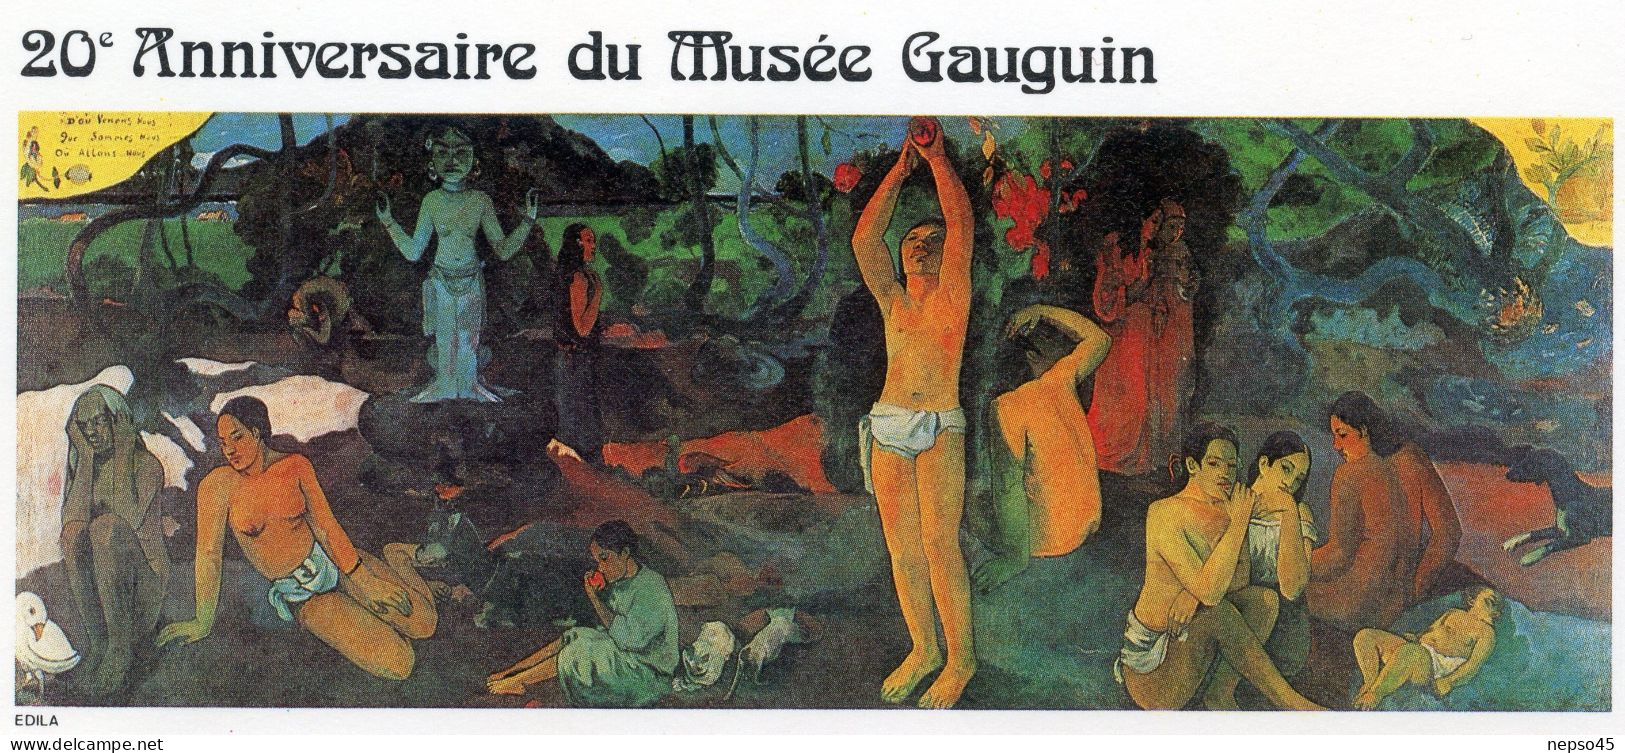 Enveloppe Timbres Premier Jour D'émission.Polynésie.Papeete 17 Mars 85.Polynésie Française Anniversaire Du Musée Gauguin - Autres & Non Classés